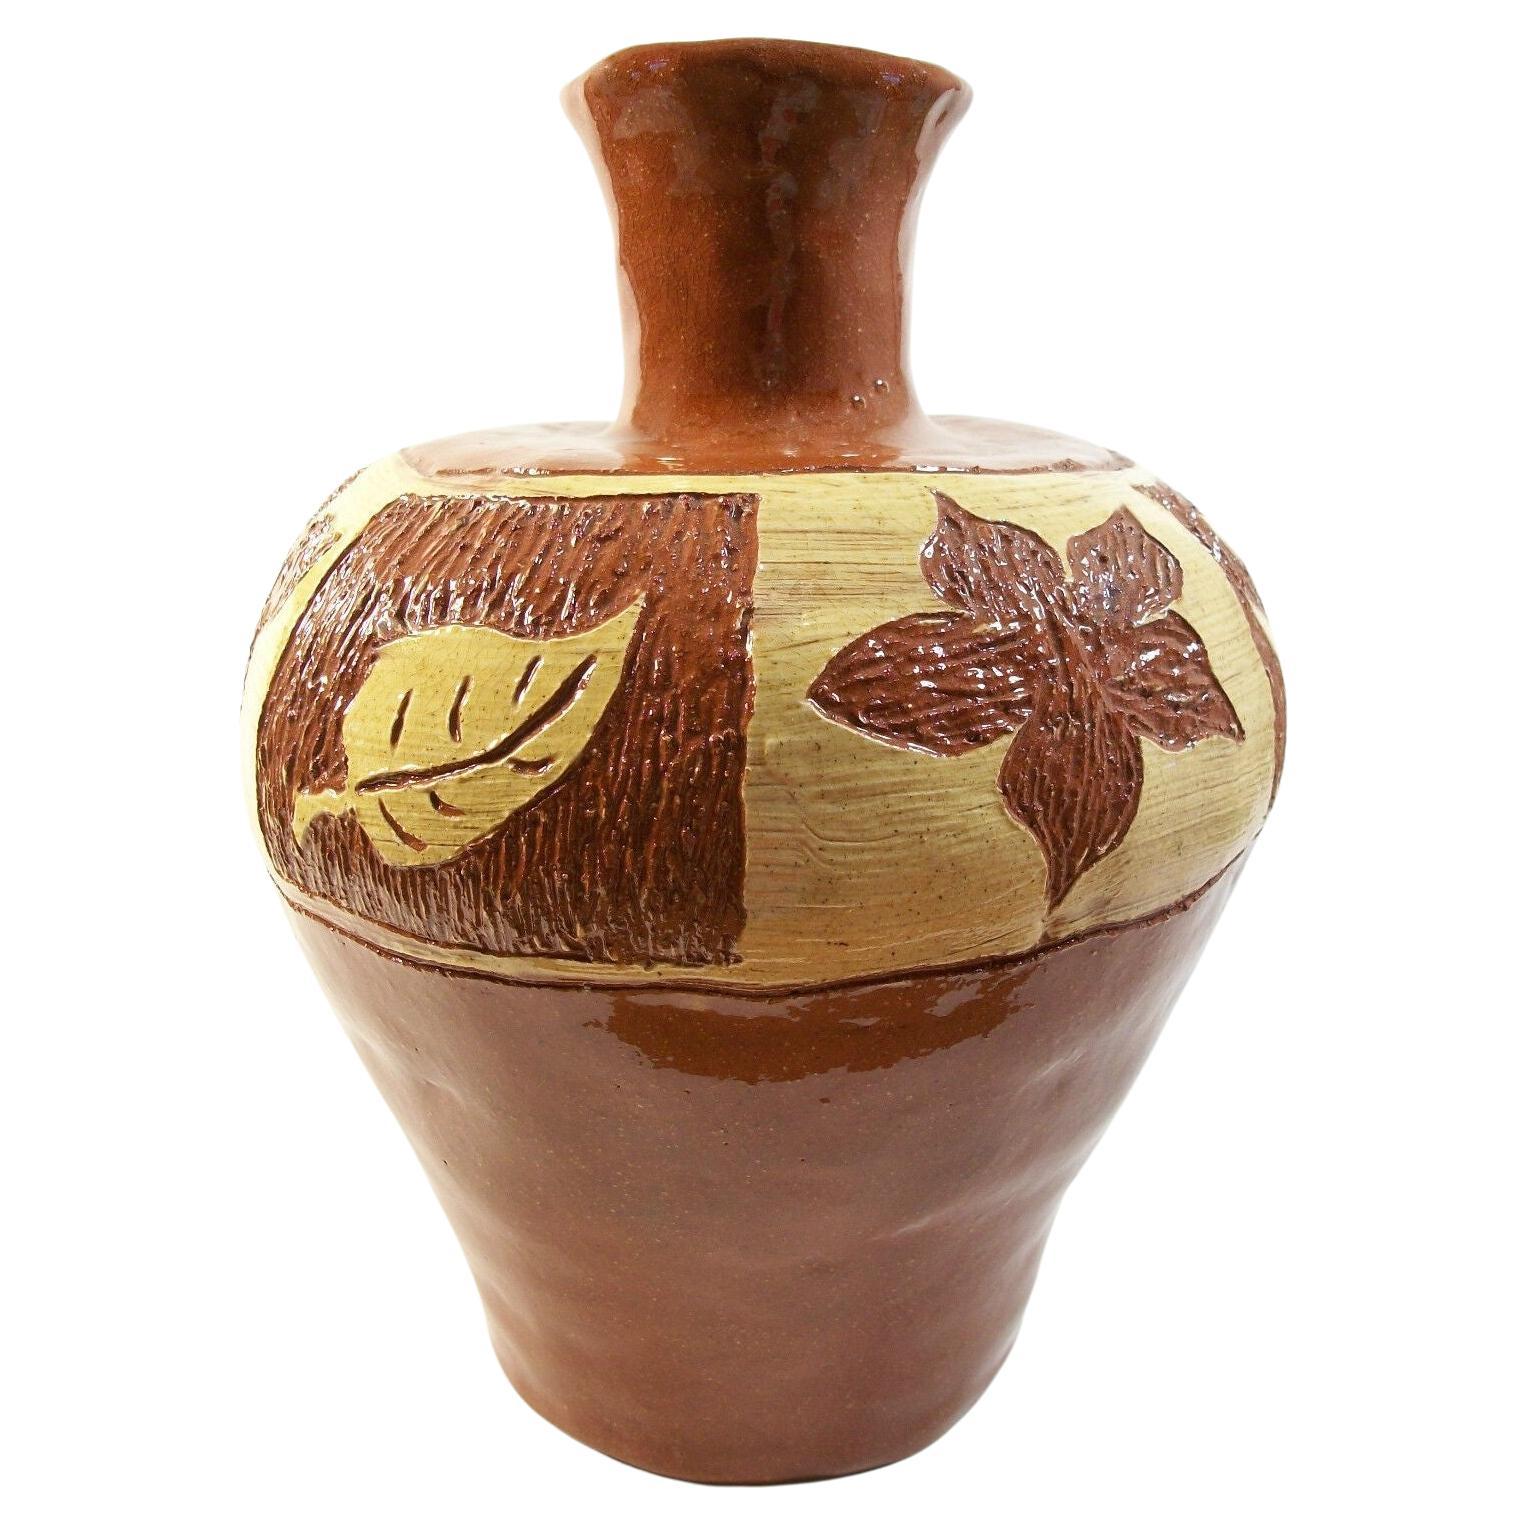 Vase artisanal vintage en terre cuite Sgraffito & Slipware, non signé, 20ème siècle